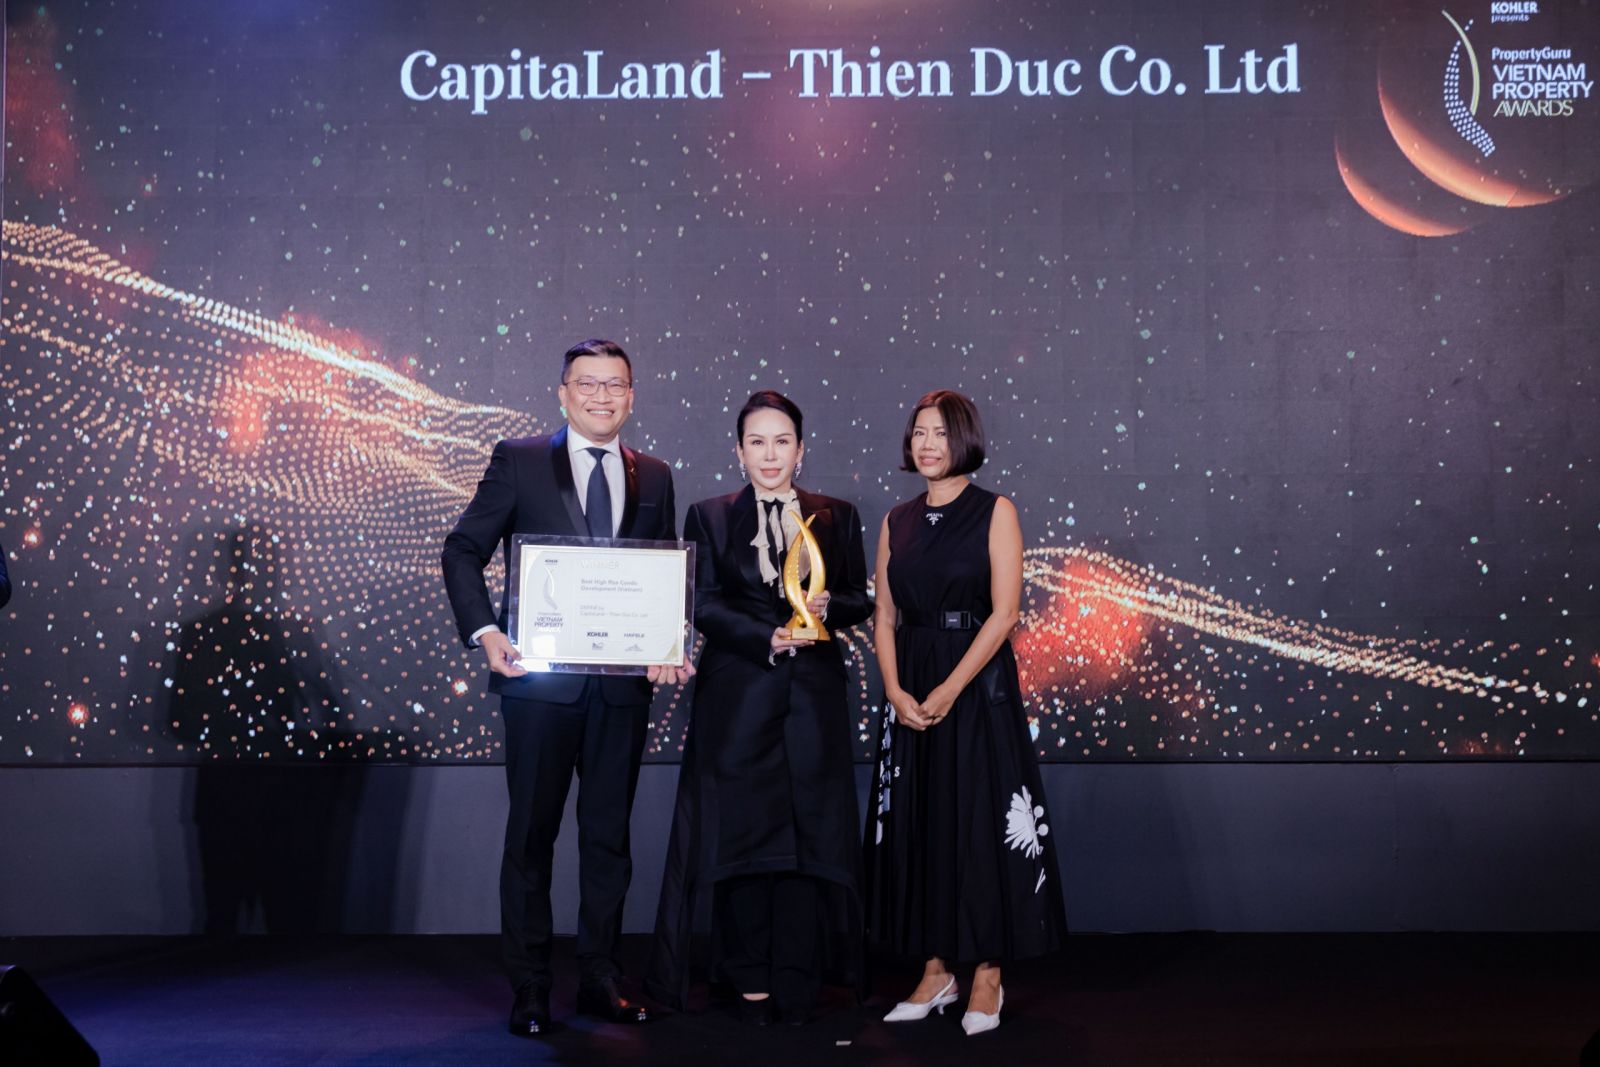 Đại diện từ CapitaLand Development nhận giải thưởng “Dự án căn hộ hạng sang xuất sắc” tại TP.HCM và “Dự án căn hộ cao tầng xuất sắc” tại Việt Nam cho dự án DEFINE